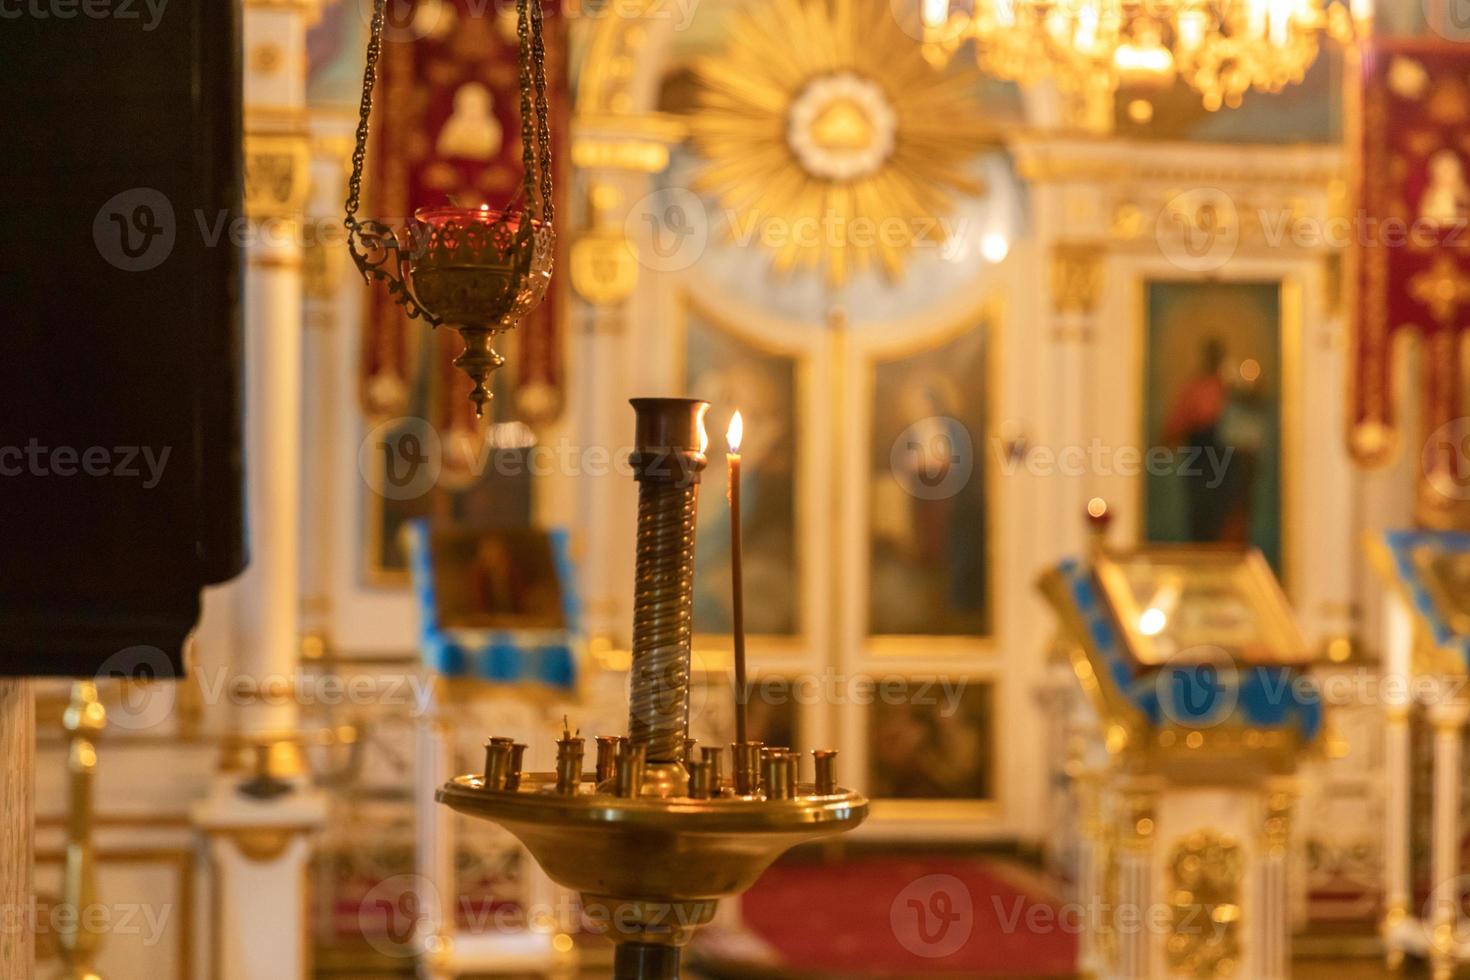 église orthodoxe. christianisme. décoration intérieure festive avec bougies allumées et icône dans l'église orthodoxe traditionnelle la veille de pâques ou de noël. religion foi prier symbole. photo